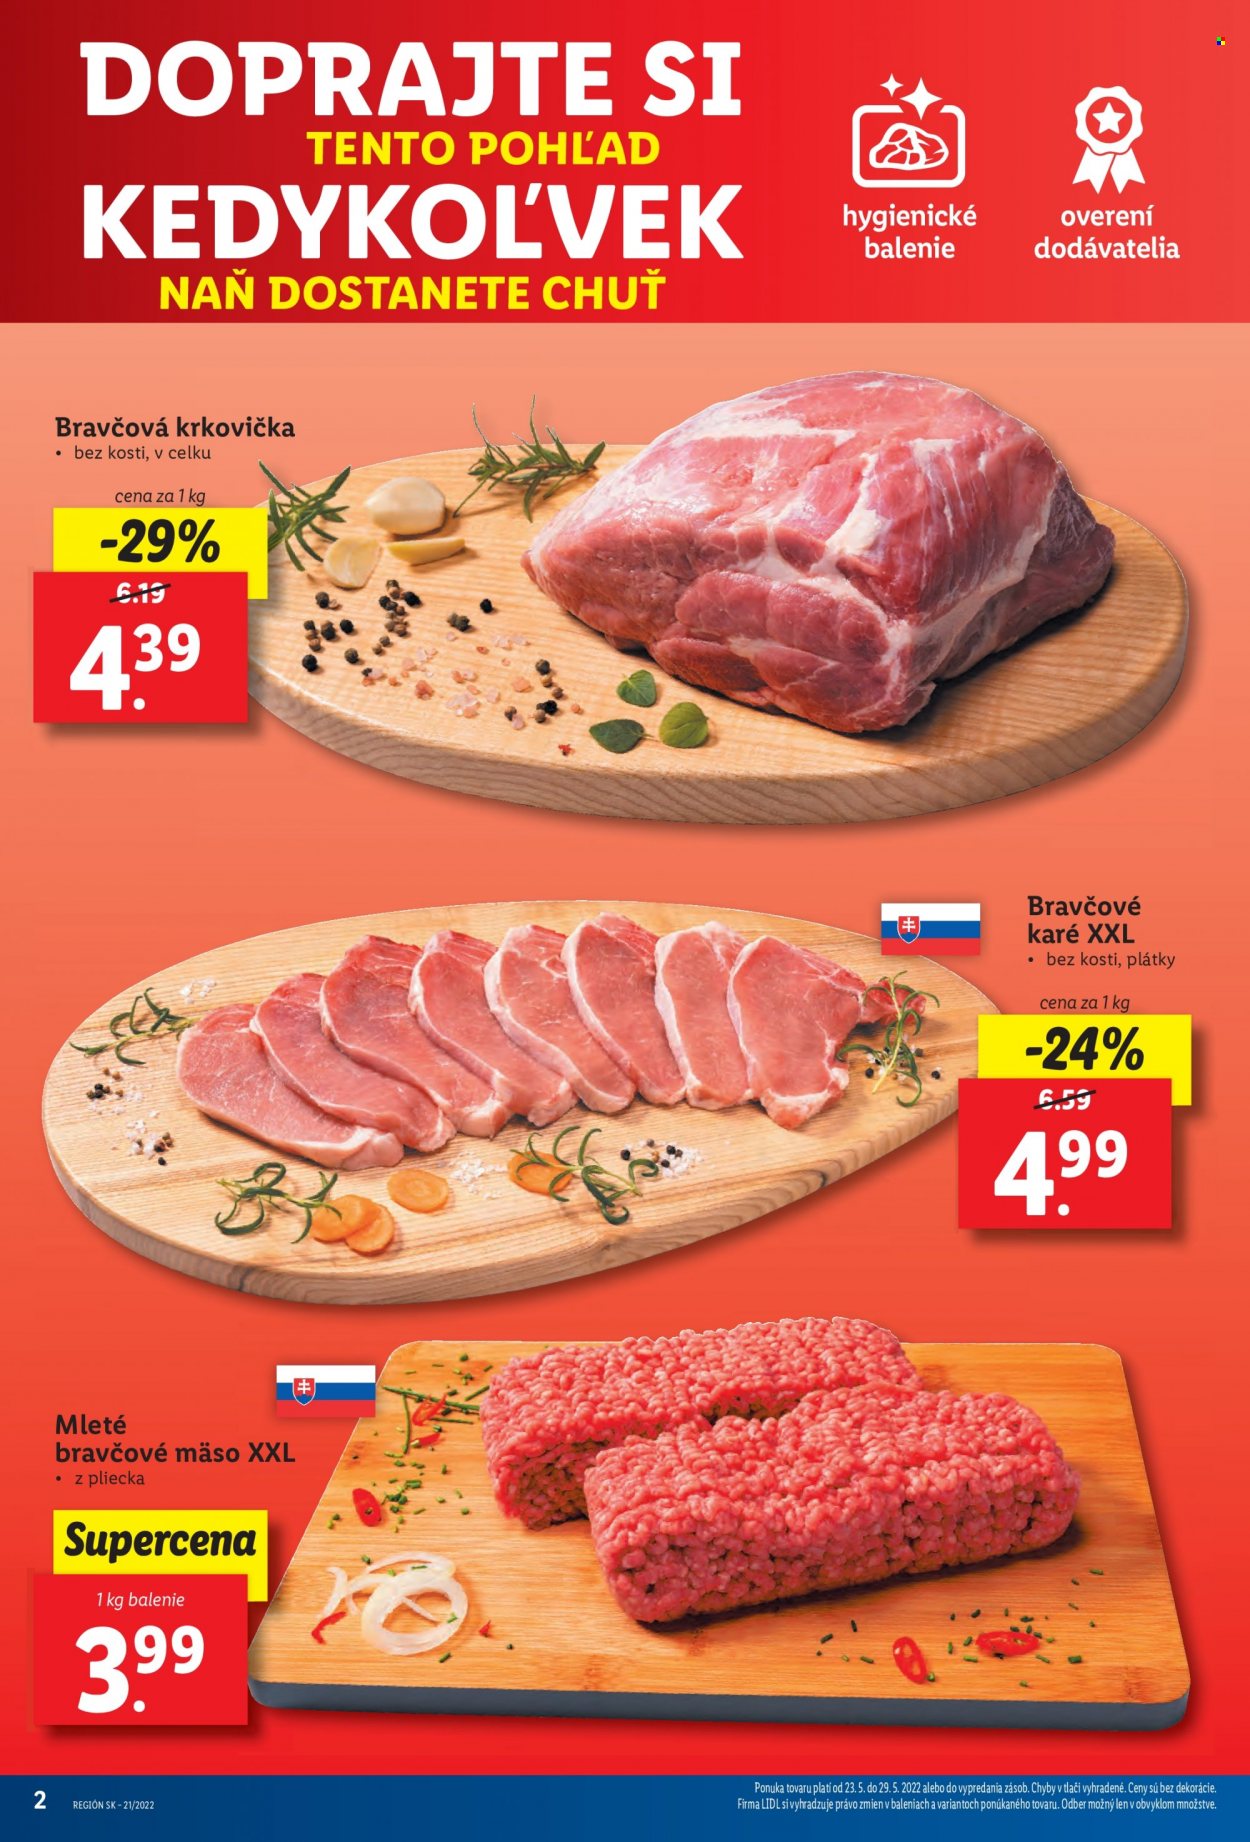 thumbnail - Leták Lidl - 23.5.2022 - 29.5.2022 - Produkty v akcii - bravčová krkovička, bravčové karé, mleté bravčové mäso, mleté mäso. Strana 3.